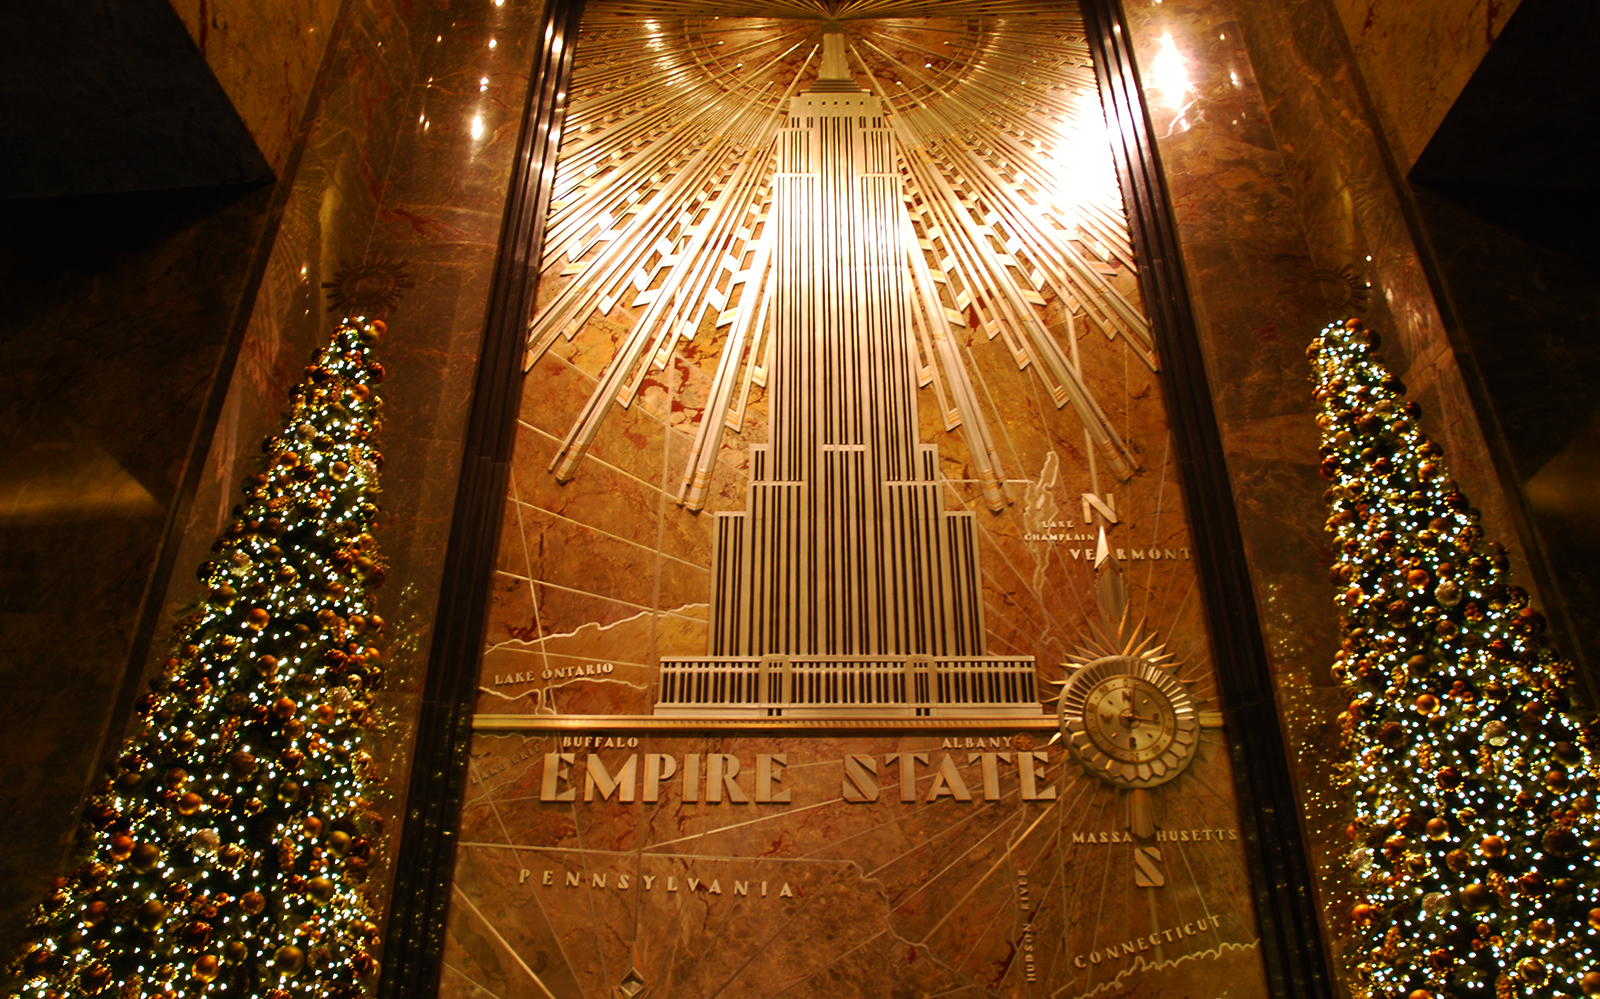 Historia do Empire state building 